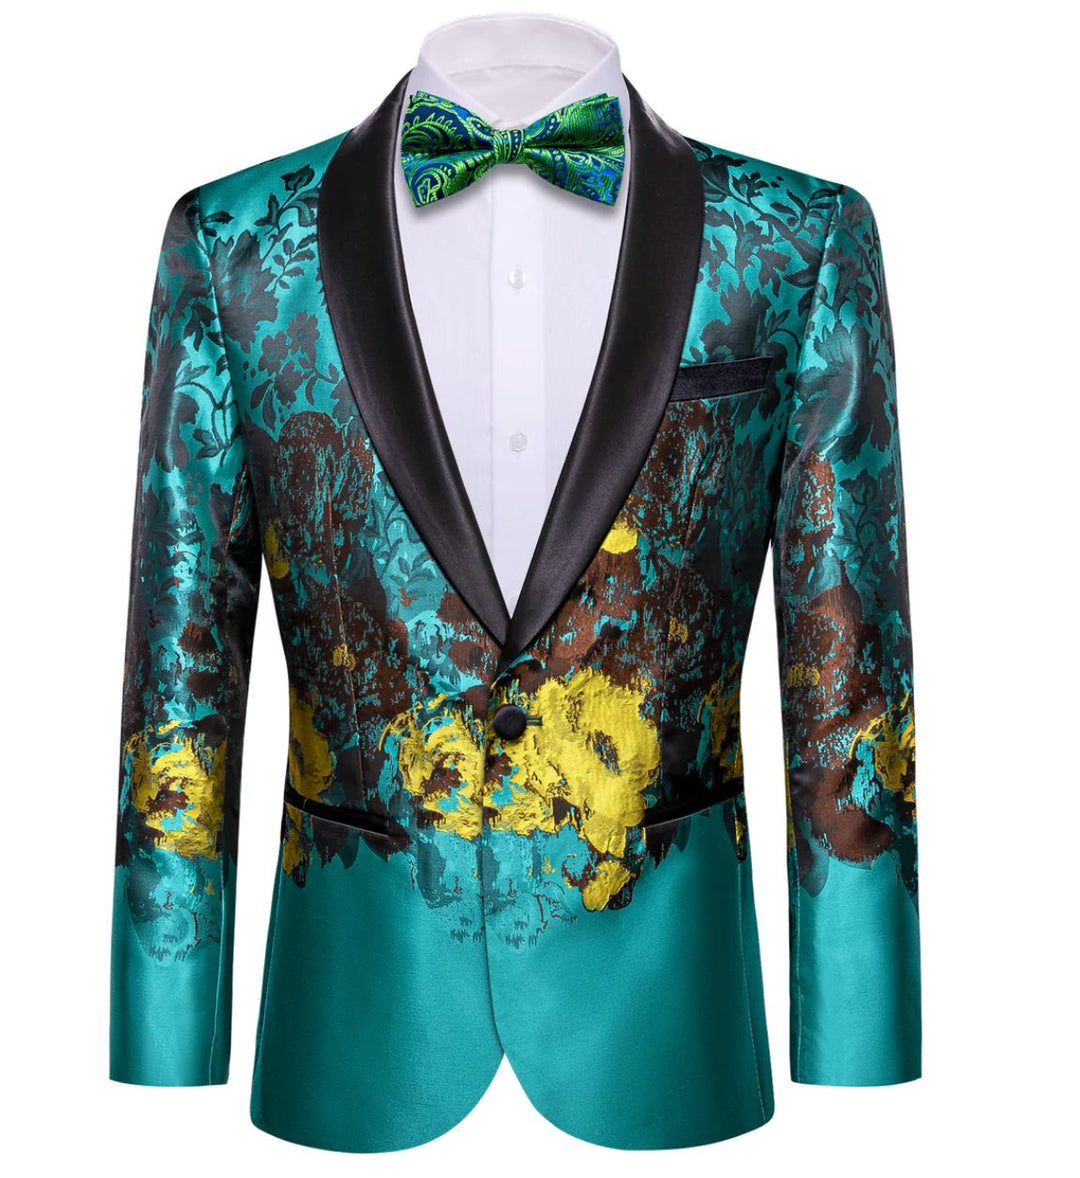 Men's Dress Party Blue Brown Floral Suit Jacket Slim One Button Stylish Blazer - XX - 0041 - SimonVon Shop